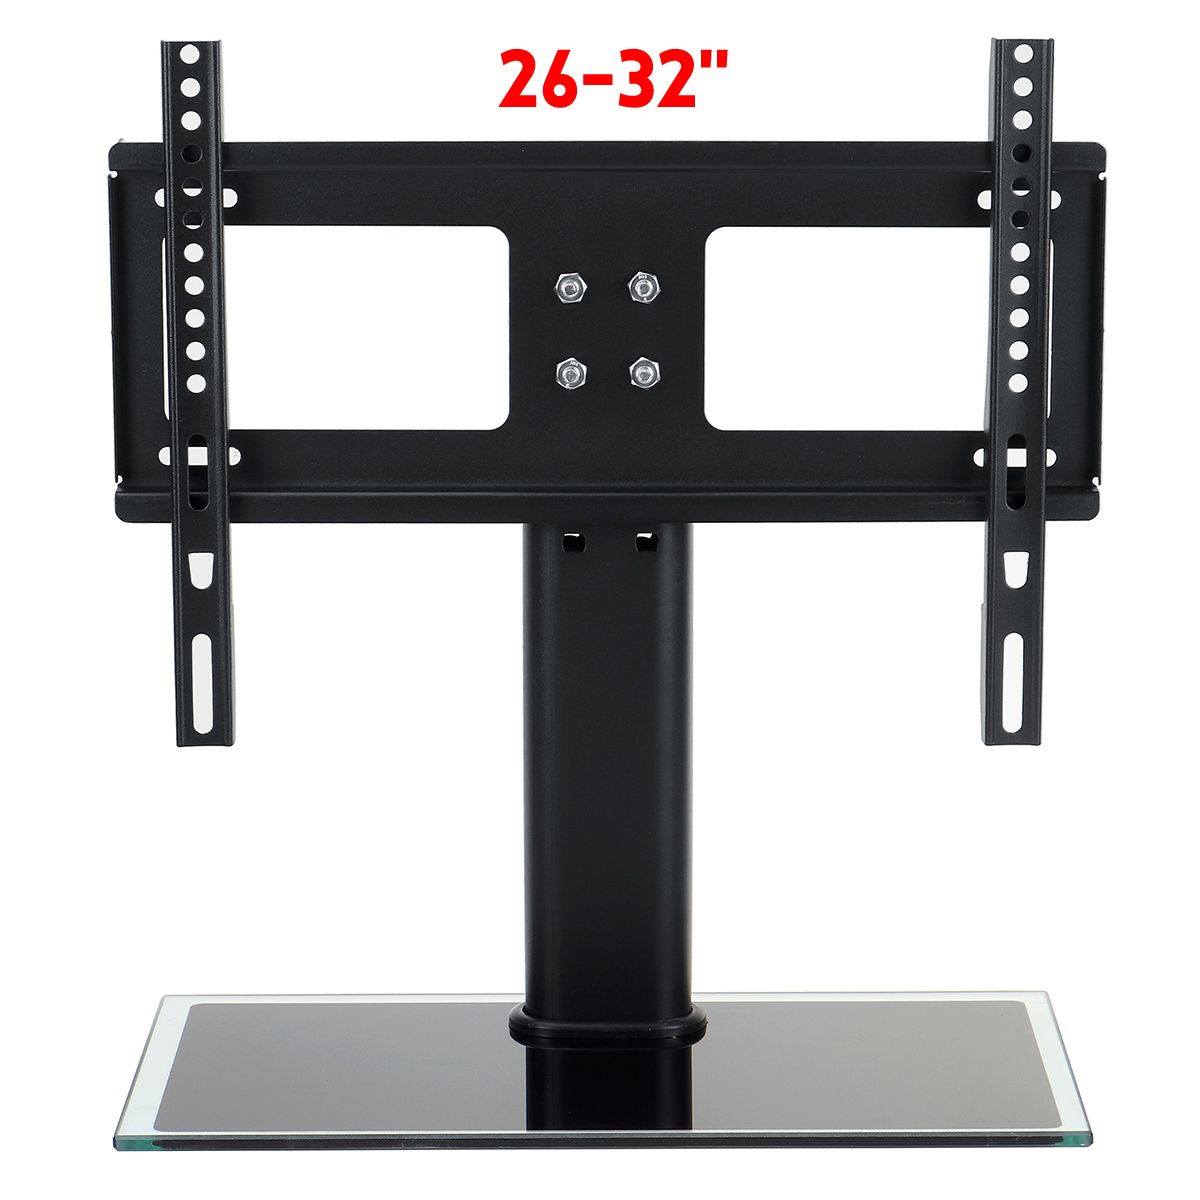 Universal-TV-Bracket-Stand-Base-Adjustable-Height-Television-Holder-Bracket-Load-40-60KG-for-26-32-i-1749862